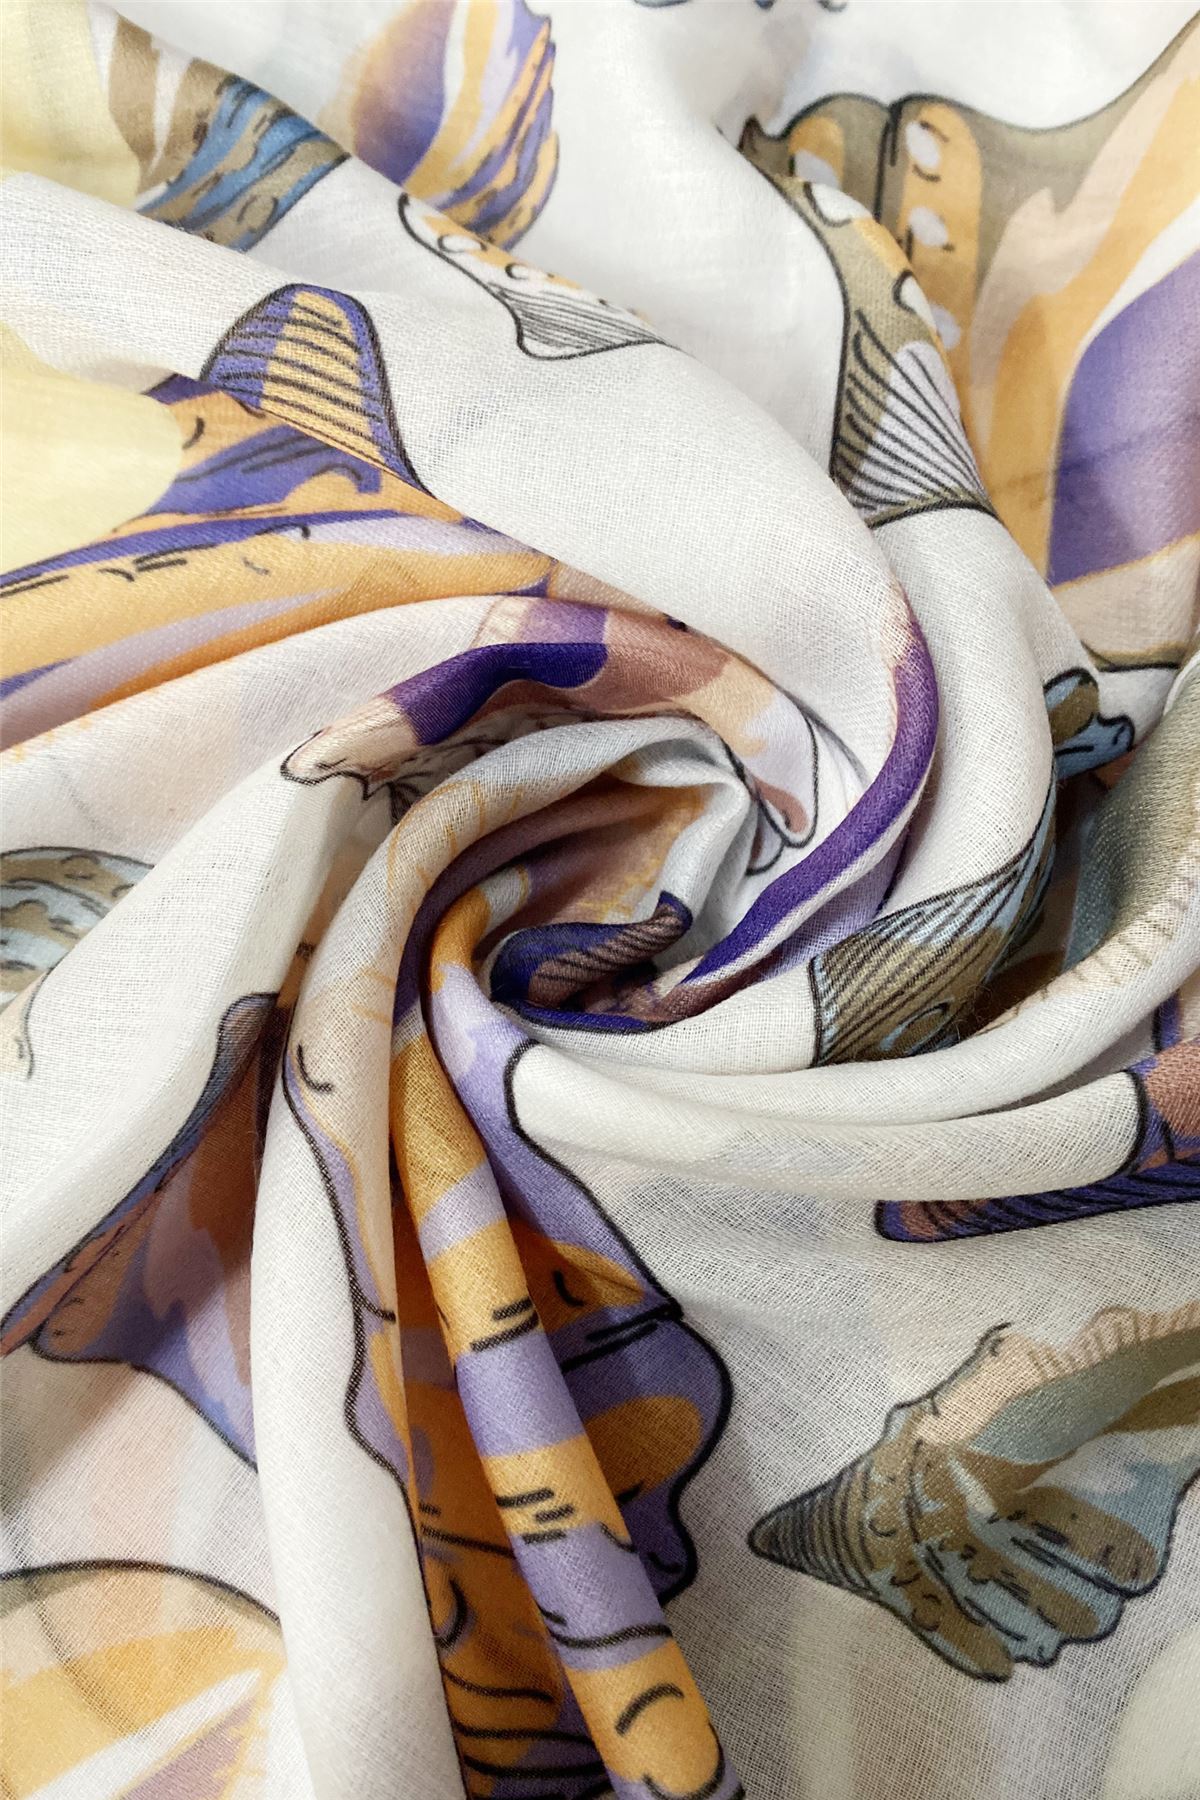 Bufanda-Mantón de algodón, 70 cm x 180 cm, Concha blanca